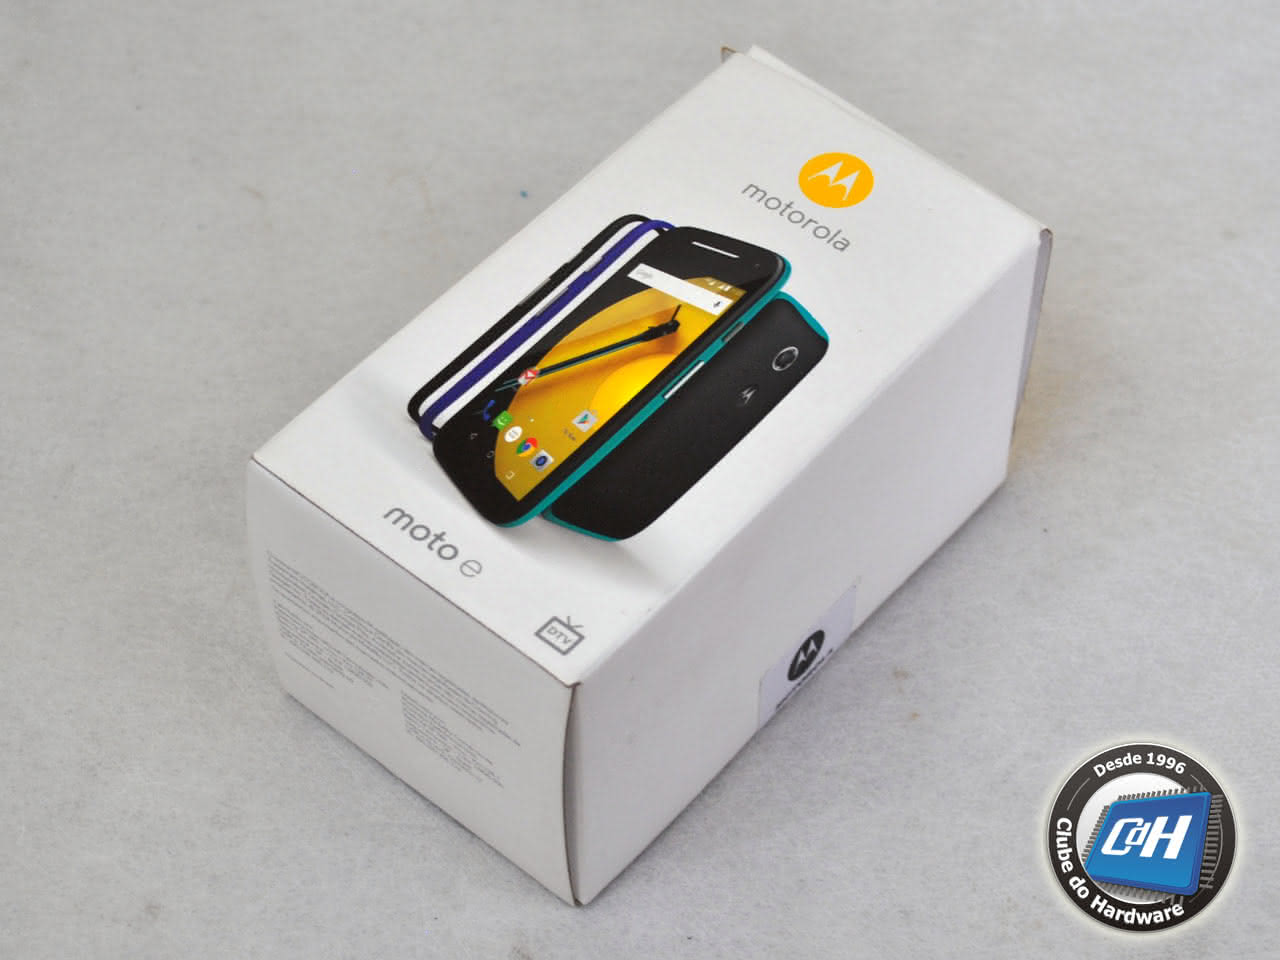 Teste do smartphone Motorola Moto E 2ª geração